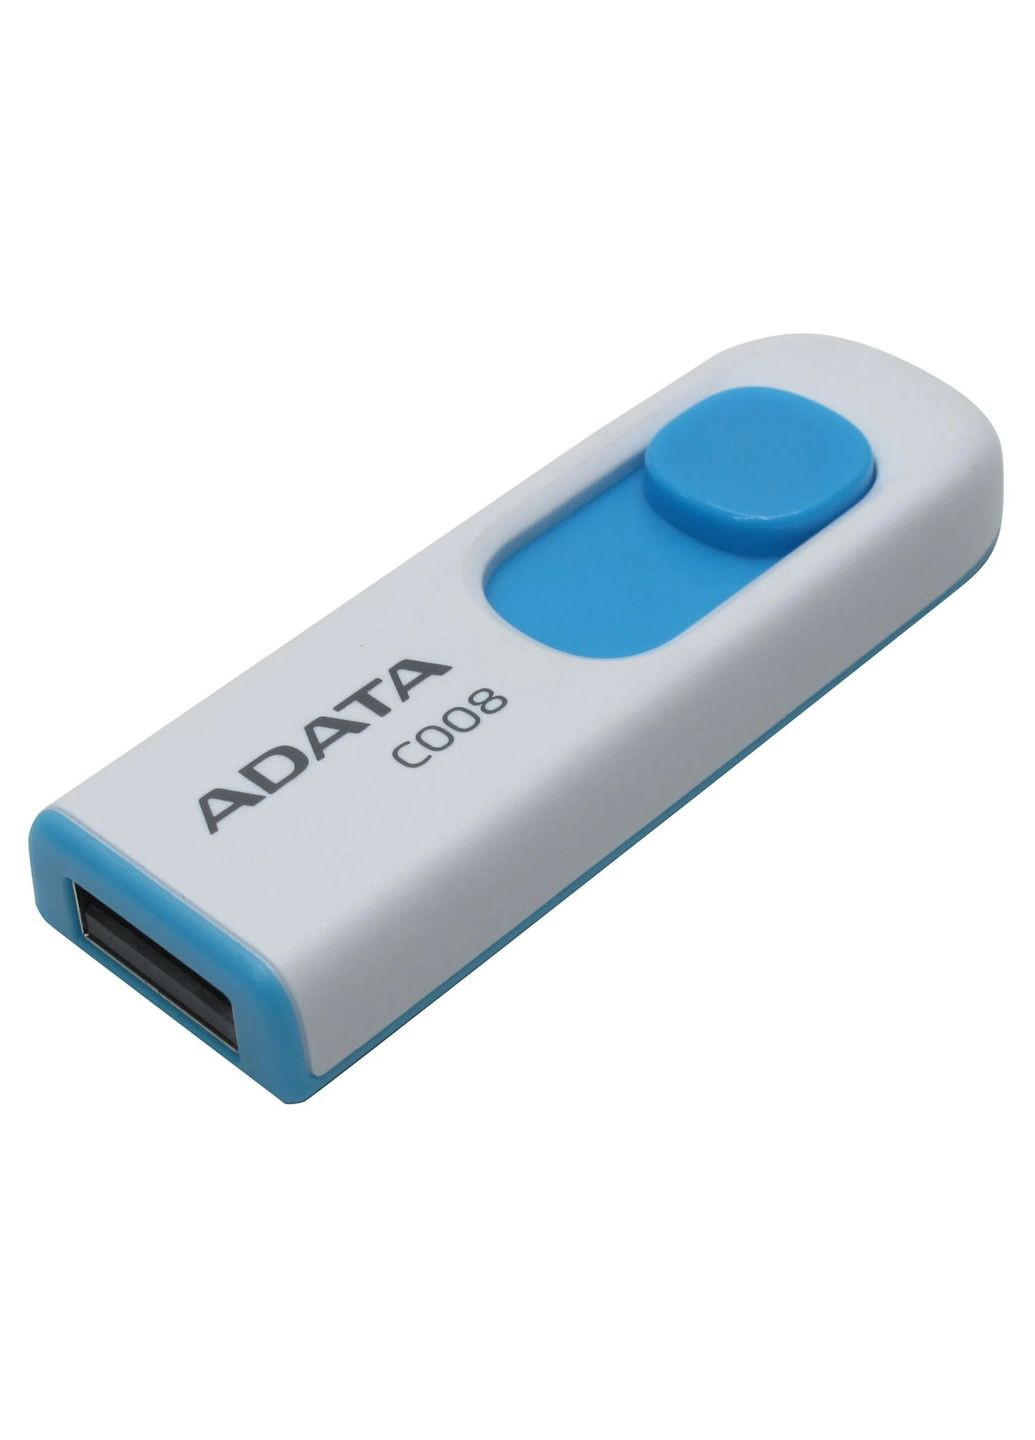 Флеш накопитель C008 16 ГБ USB 2.0 белый с голубым ADATA (293346740)